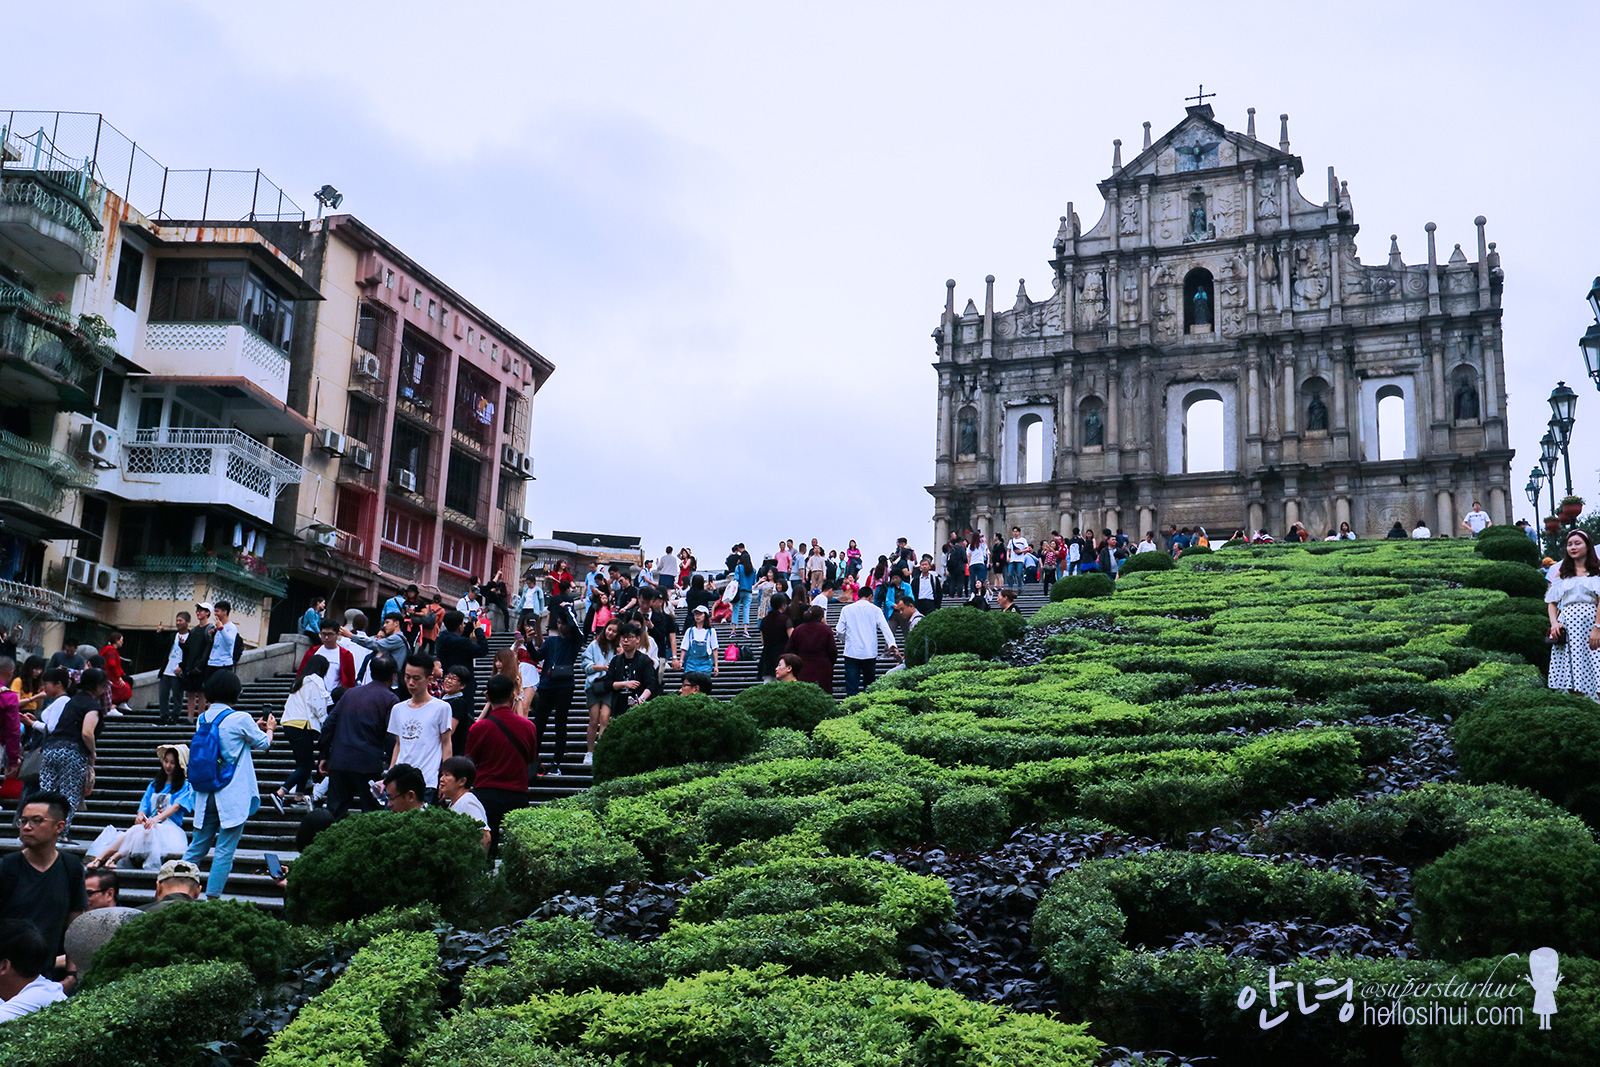 Macau D02 – Senado Square and many more